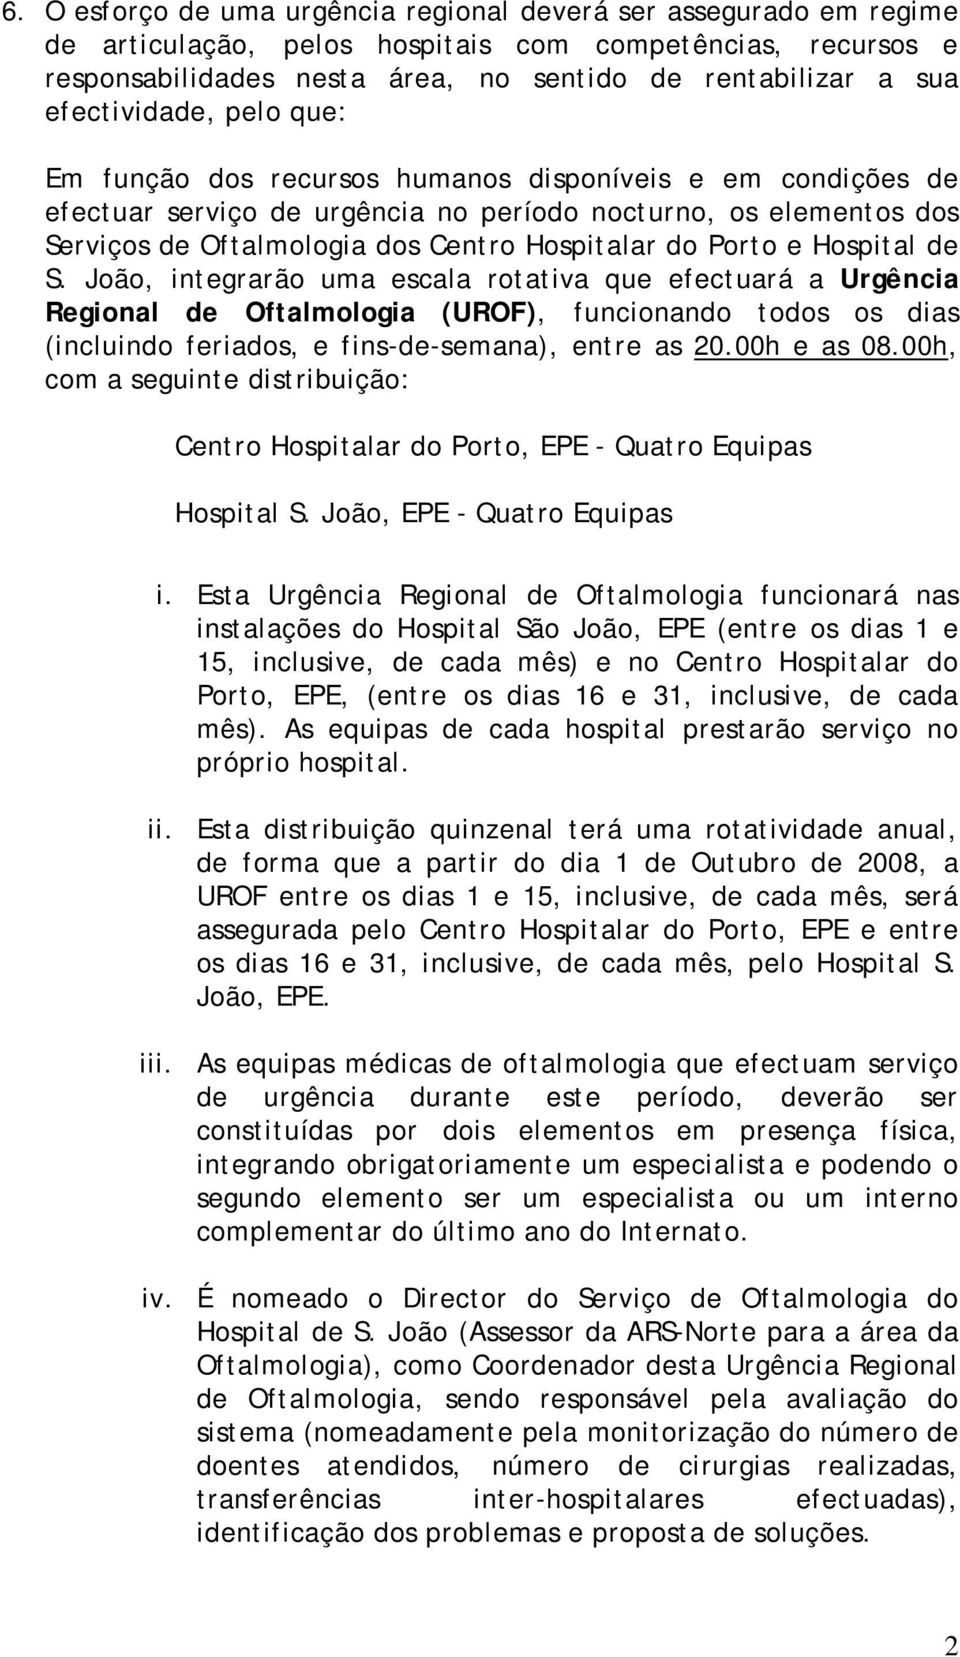 do Porto e Hospital de S. João, integrarão uma escala rotativa que efectuará a Urgência Regional de Oftalmologia (UROF), funcionando todos os dias (incluindo feriados, e fins-de-semana), entre as 20.